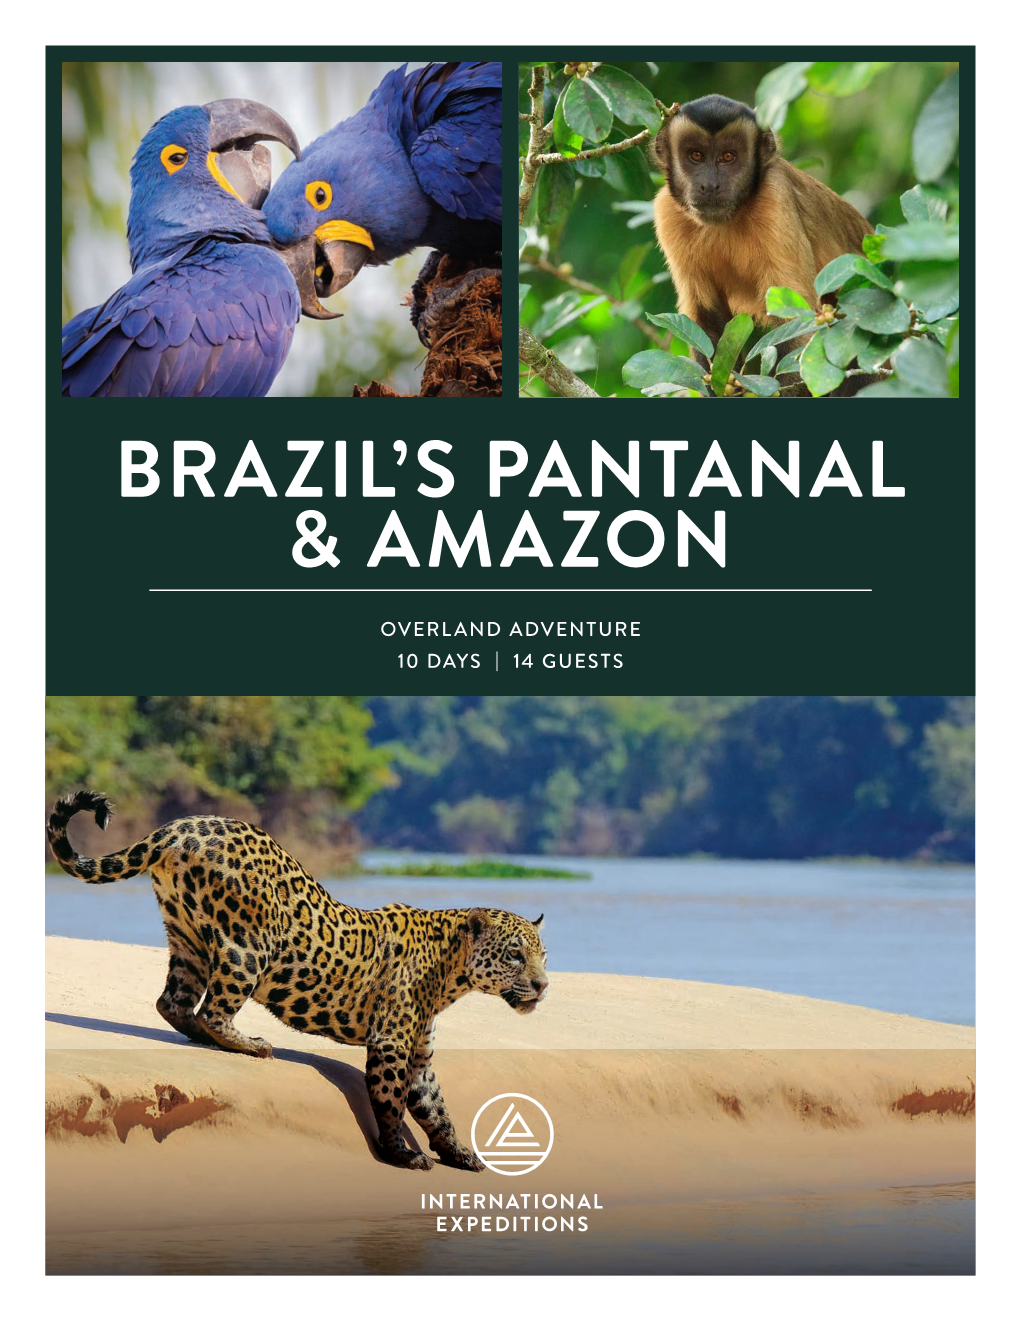 Brazil's Pantanal & Amazon